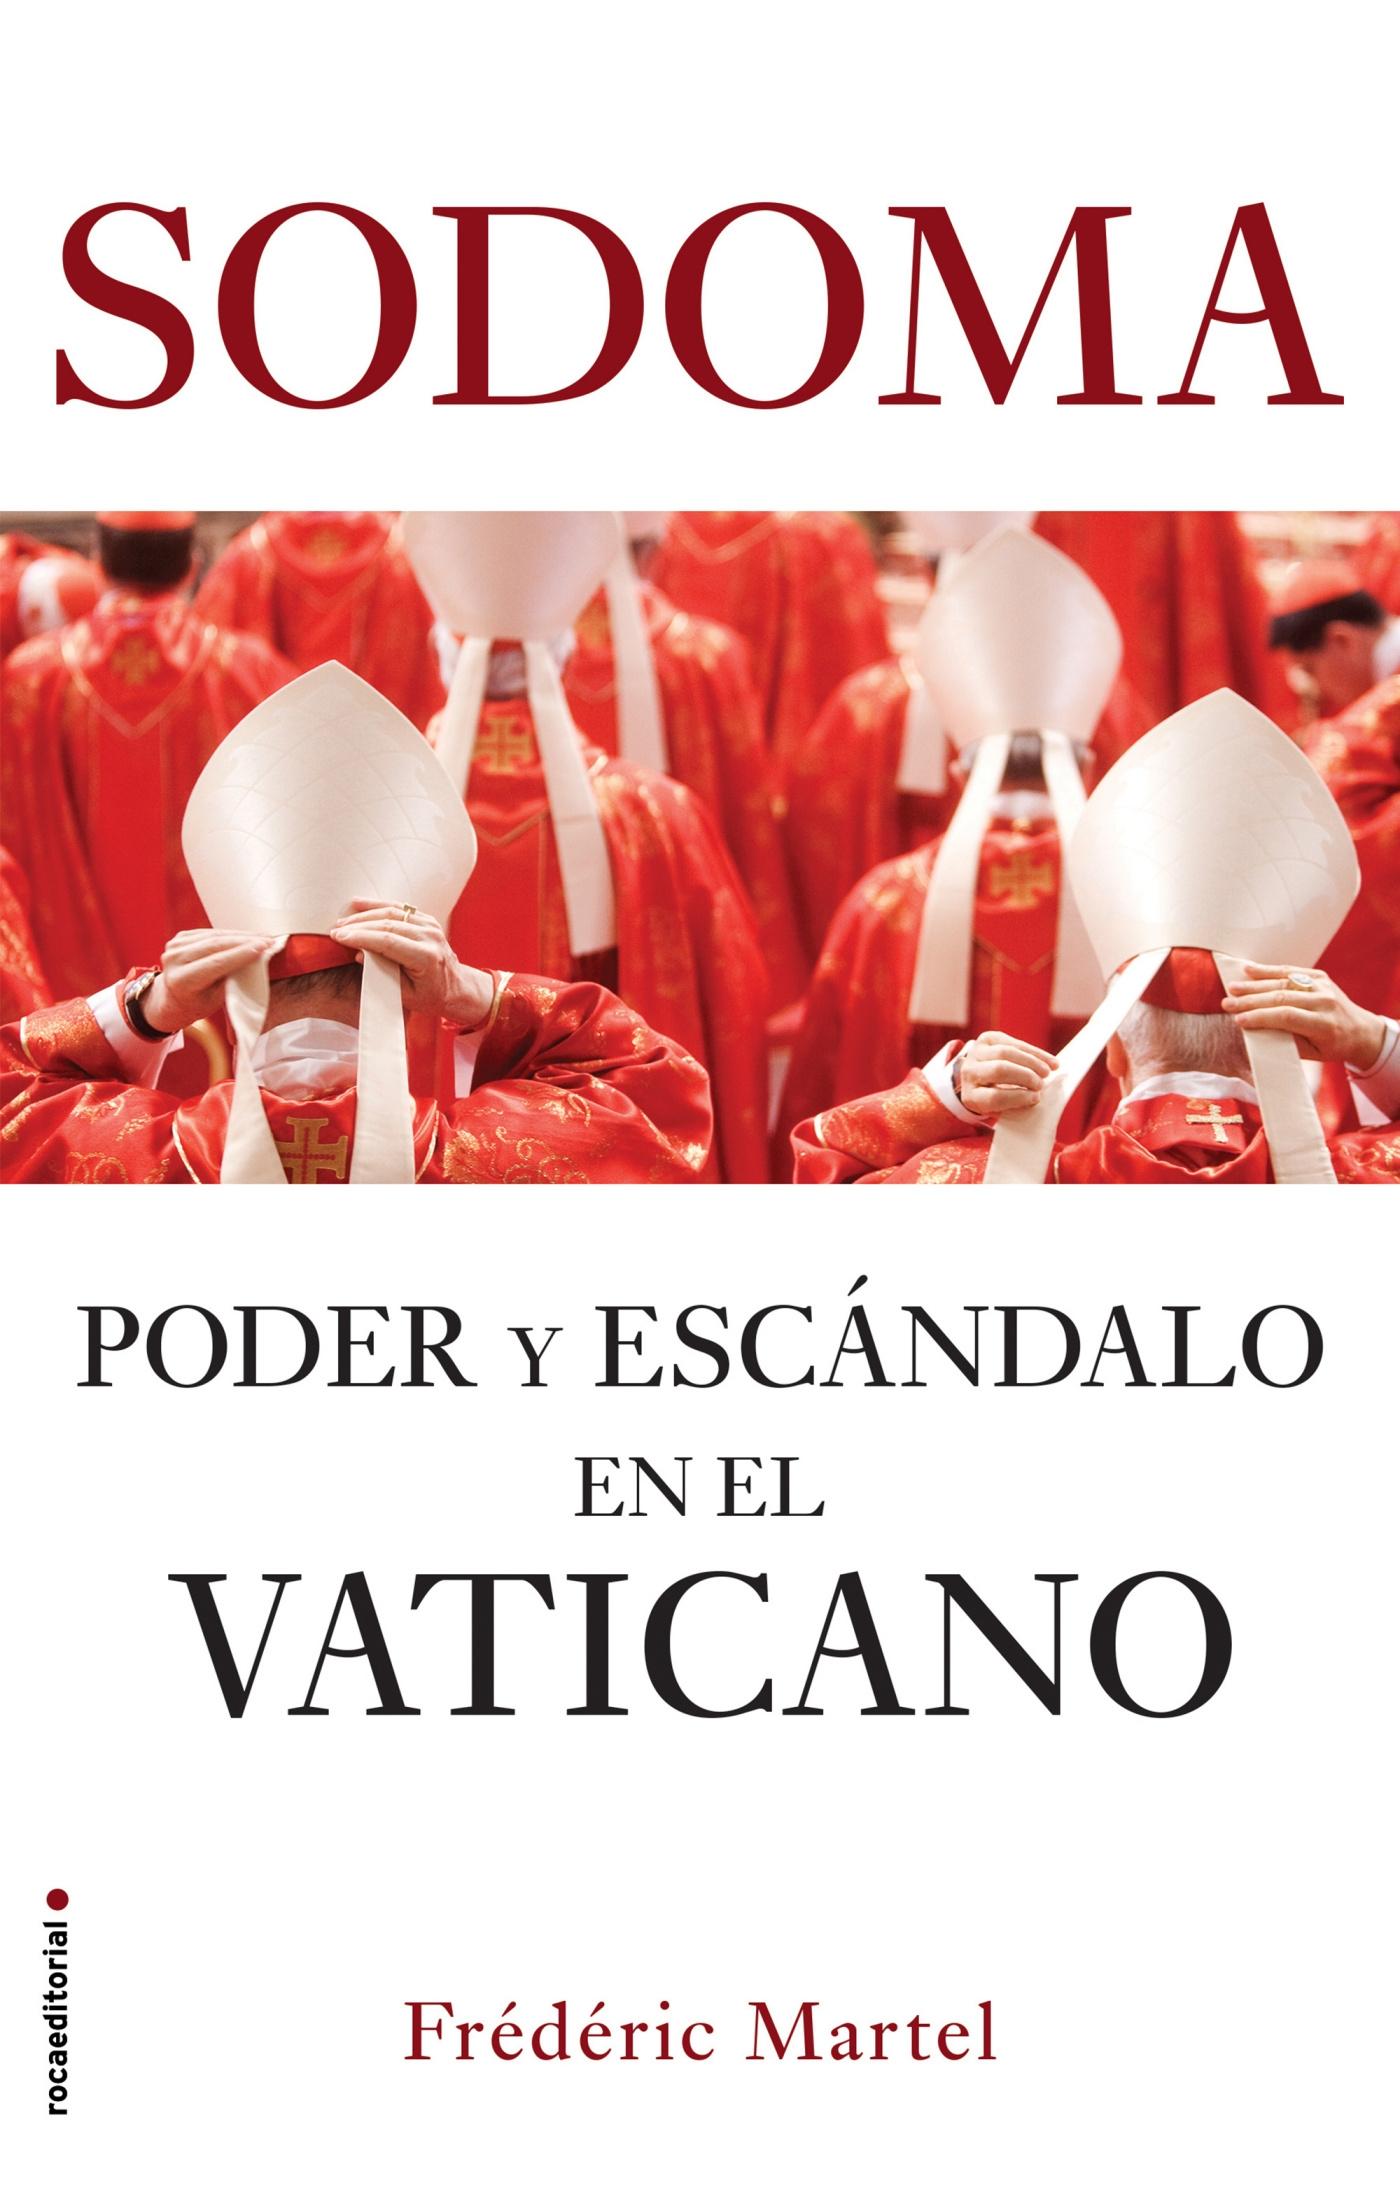 Sodoma "Poder y Escándalo en el Vaticano"